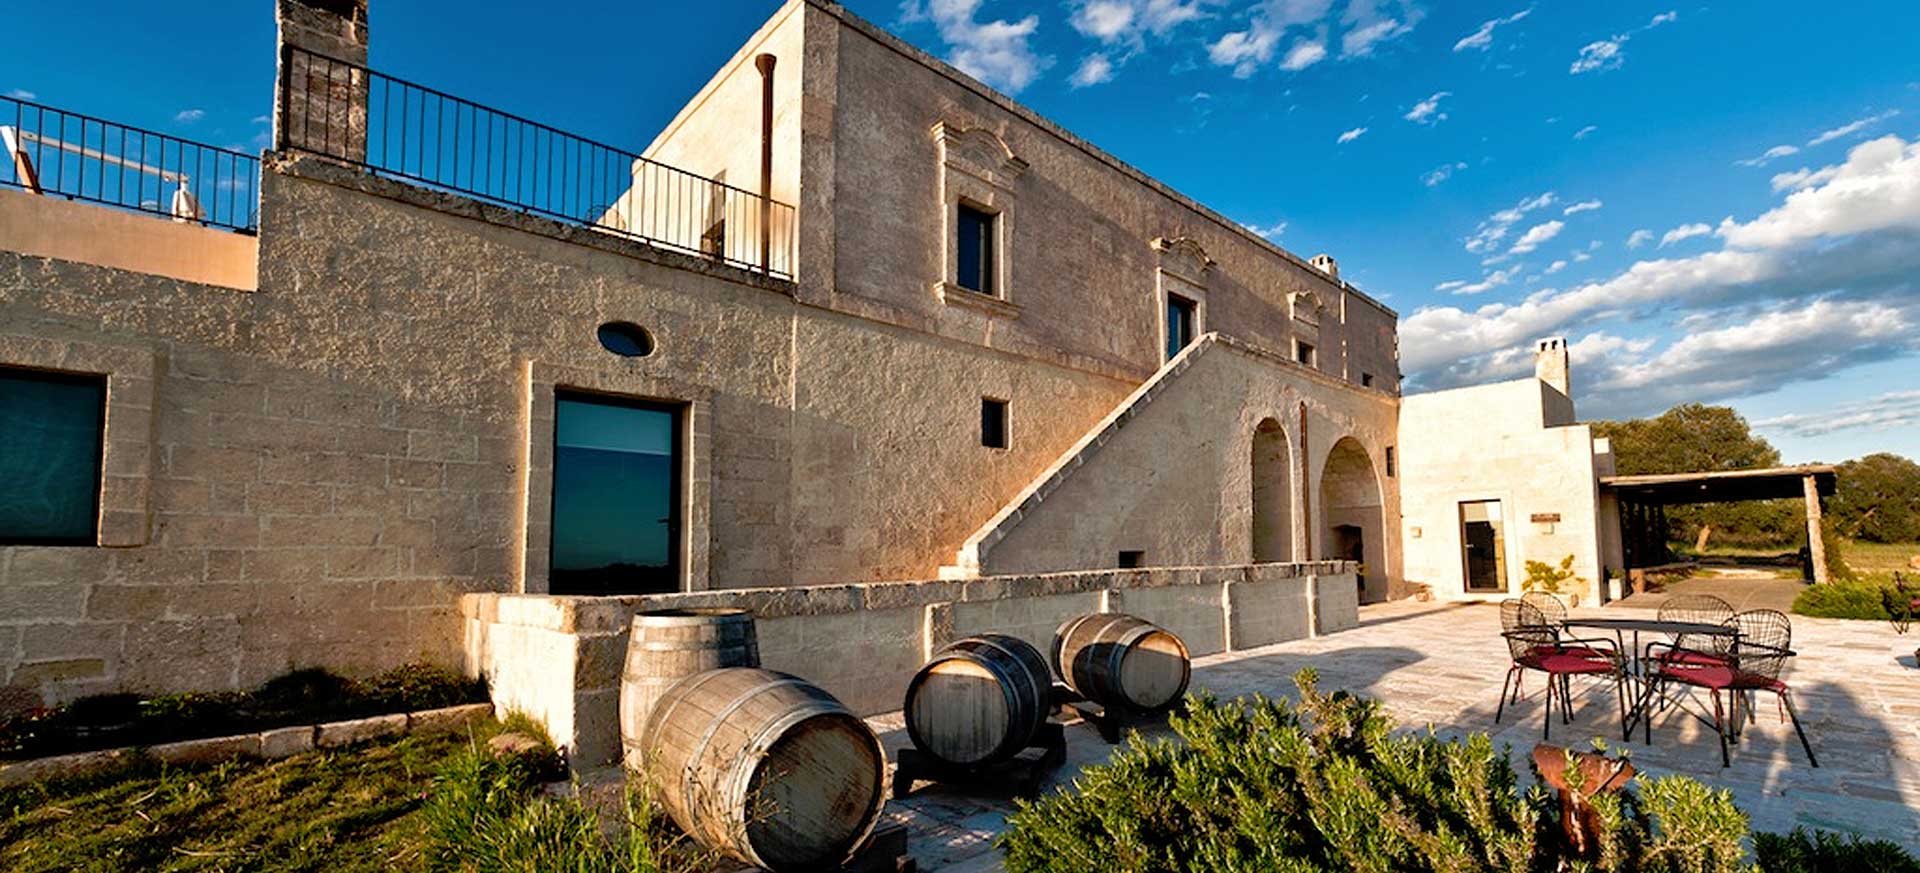 Luxury wine resort hotel Manduria - Taranto